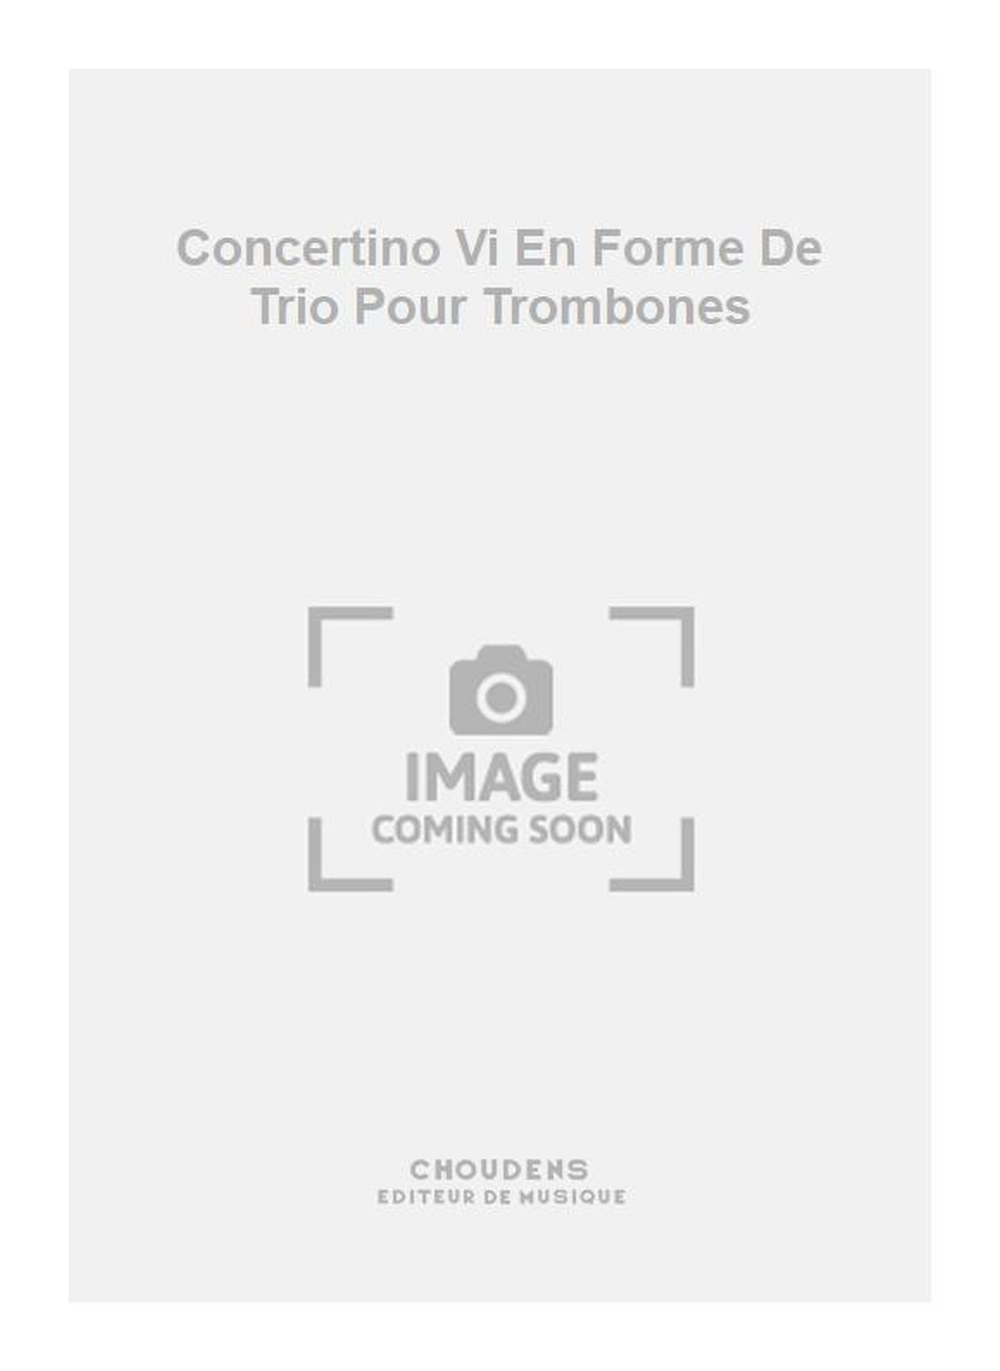 Pichaureau: Concertino Vi En Forme De Trio Pour Trombones